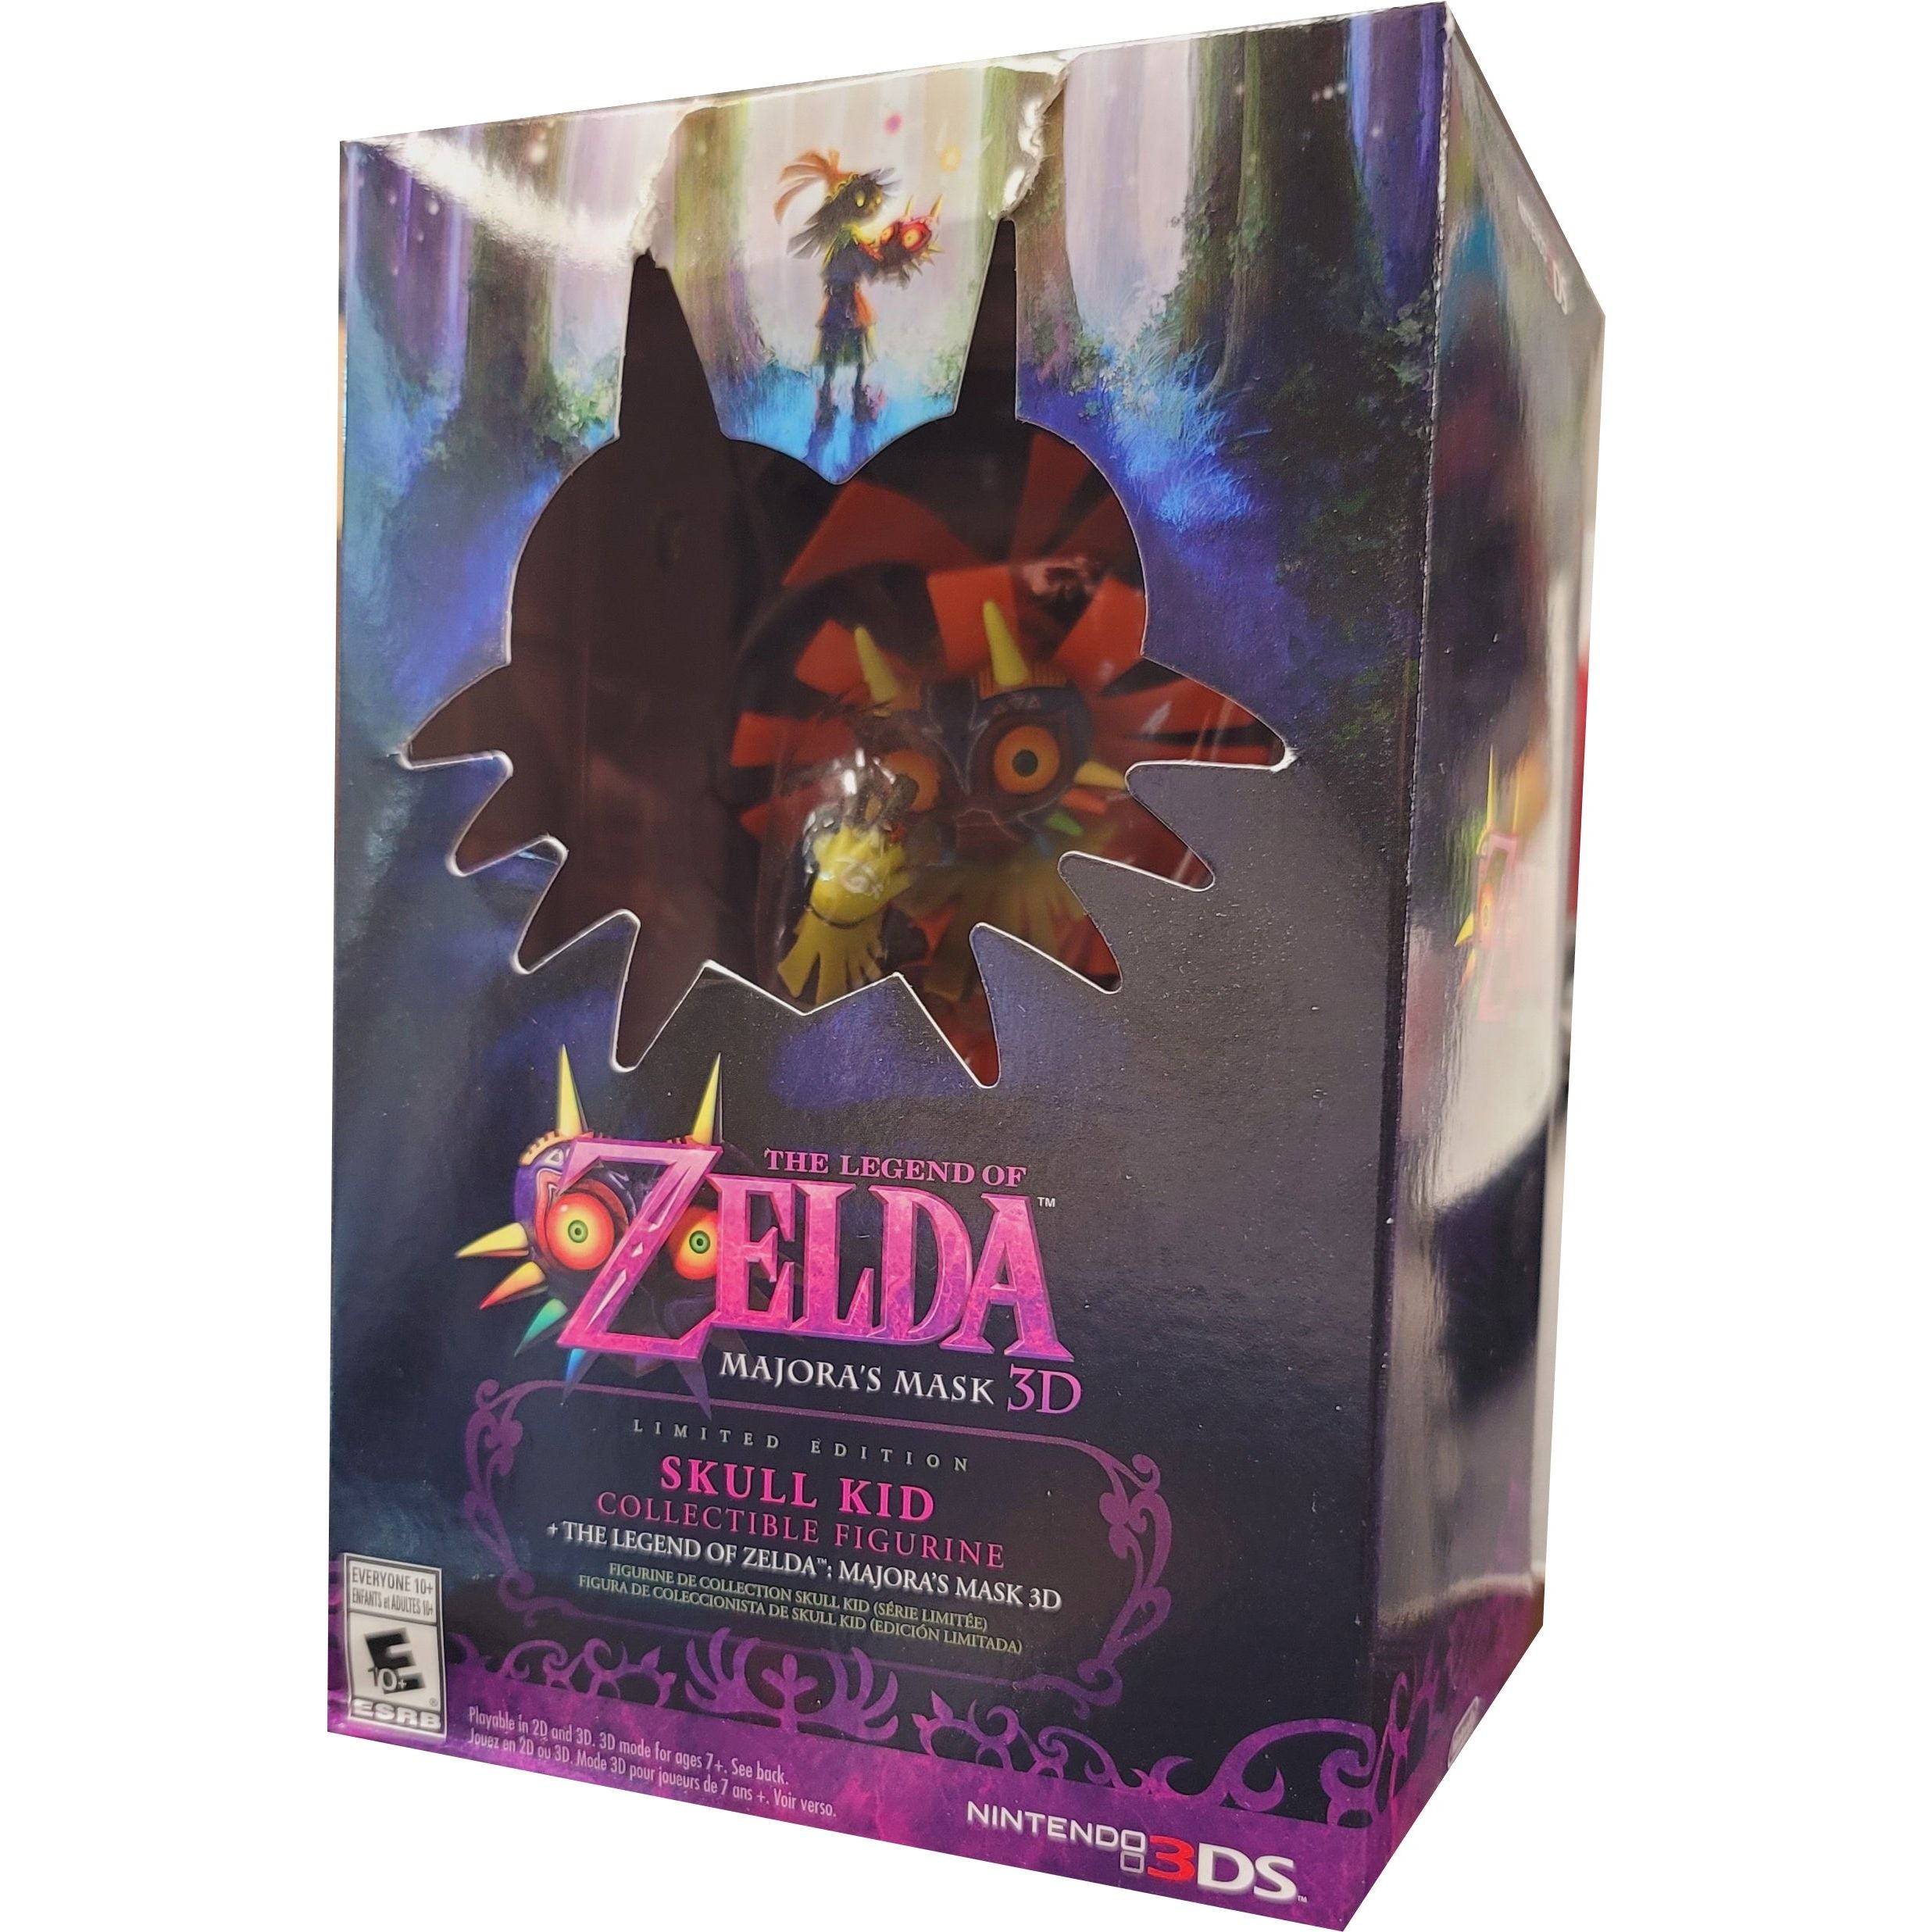 3DS - The Legend of Zelda Majora's Mask 3D Limited Edition (Sealed Game)